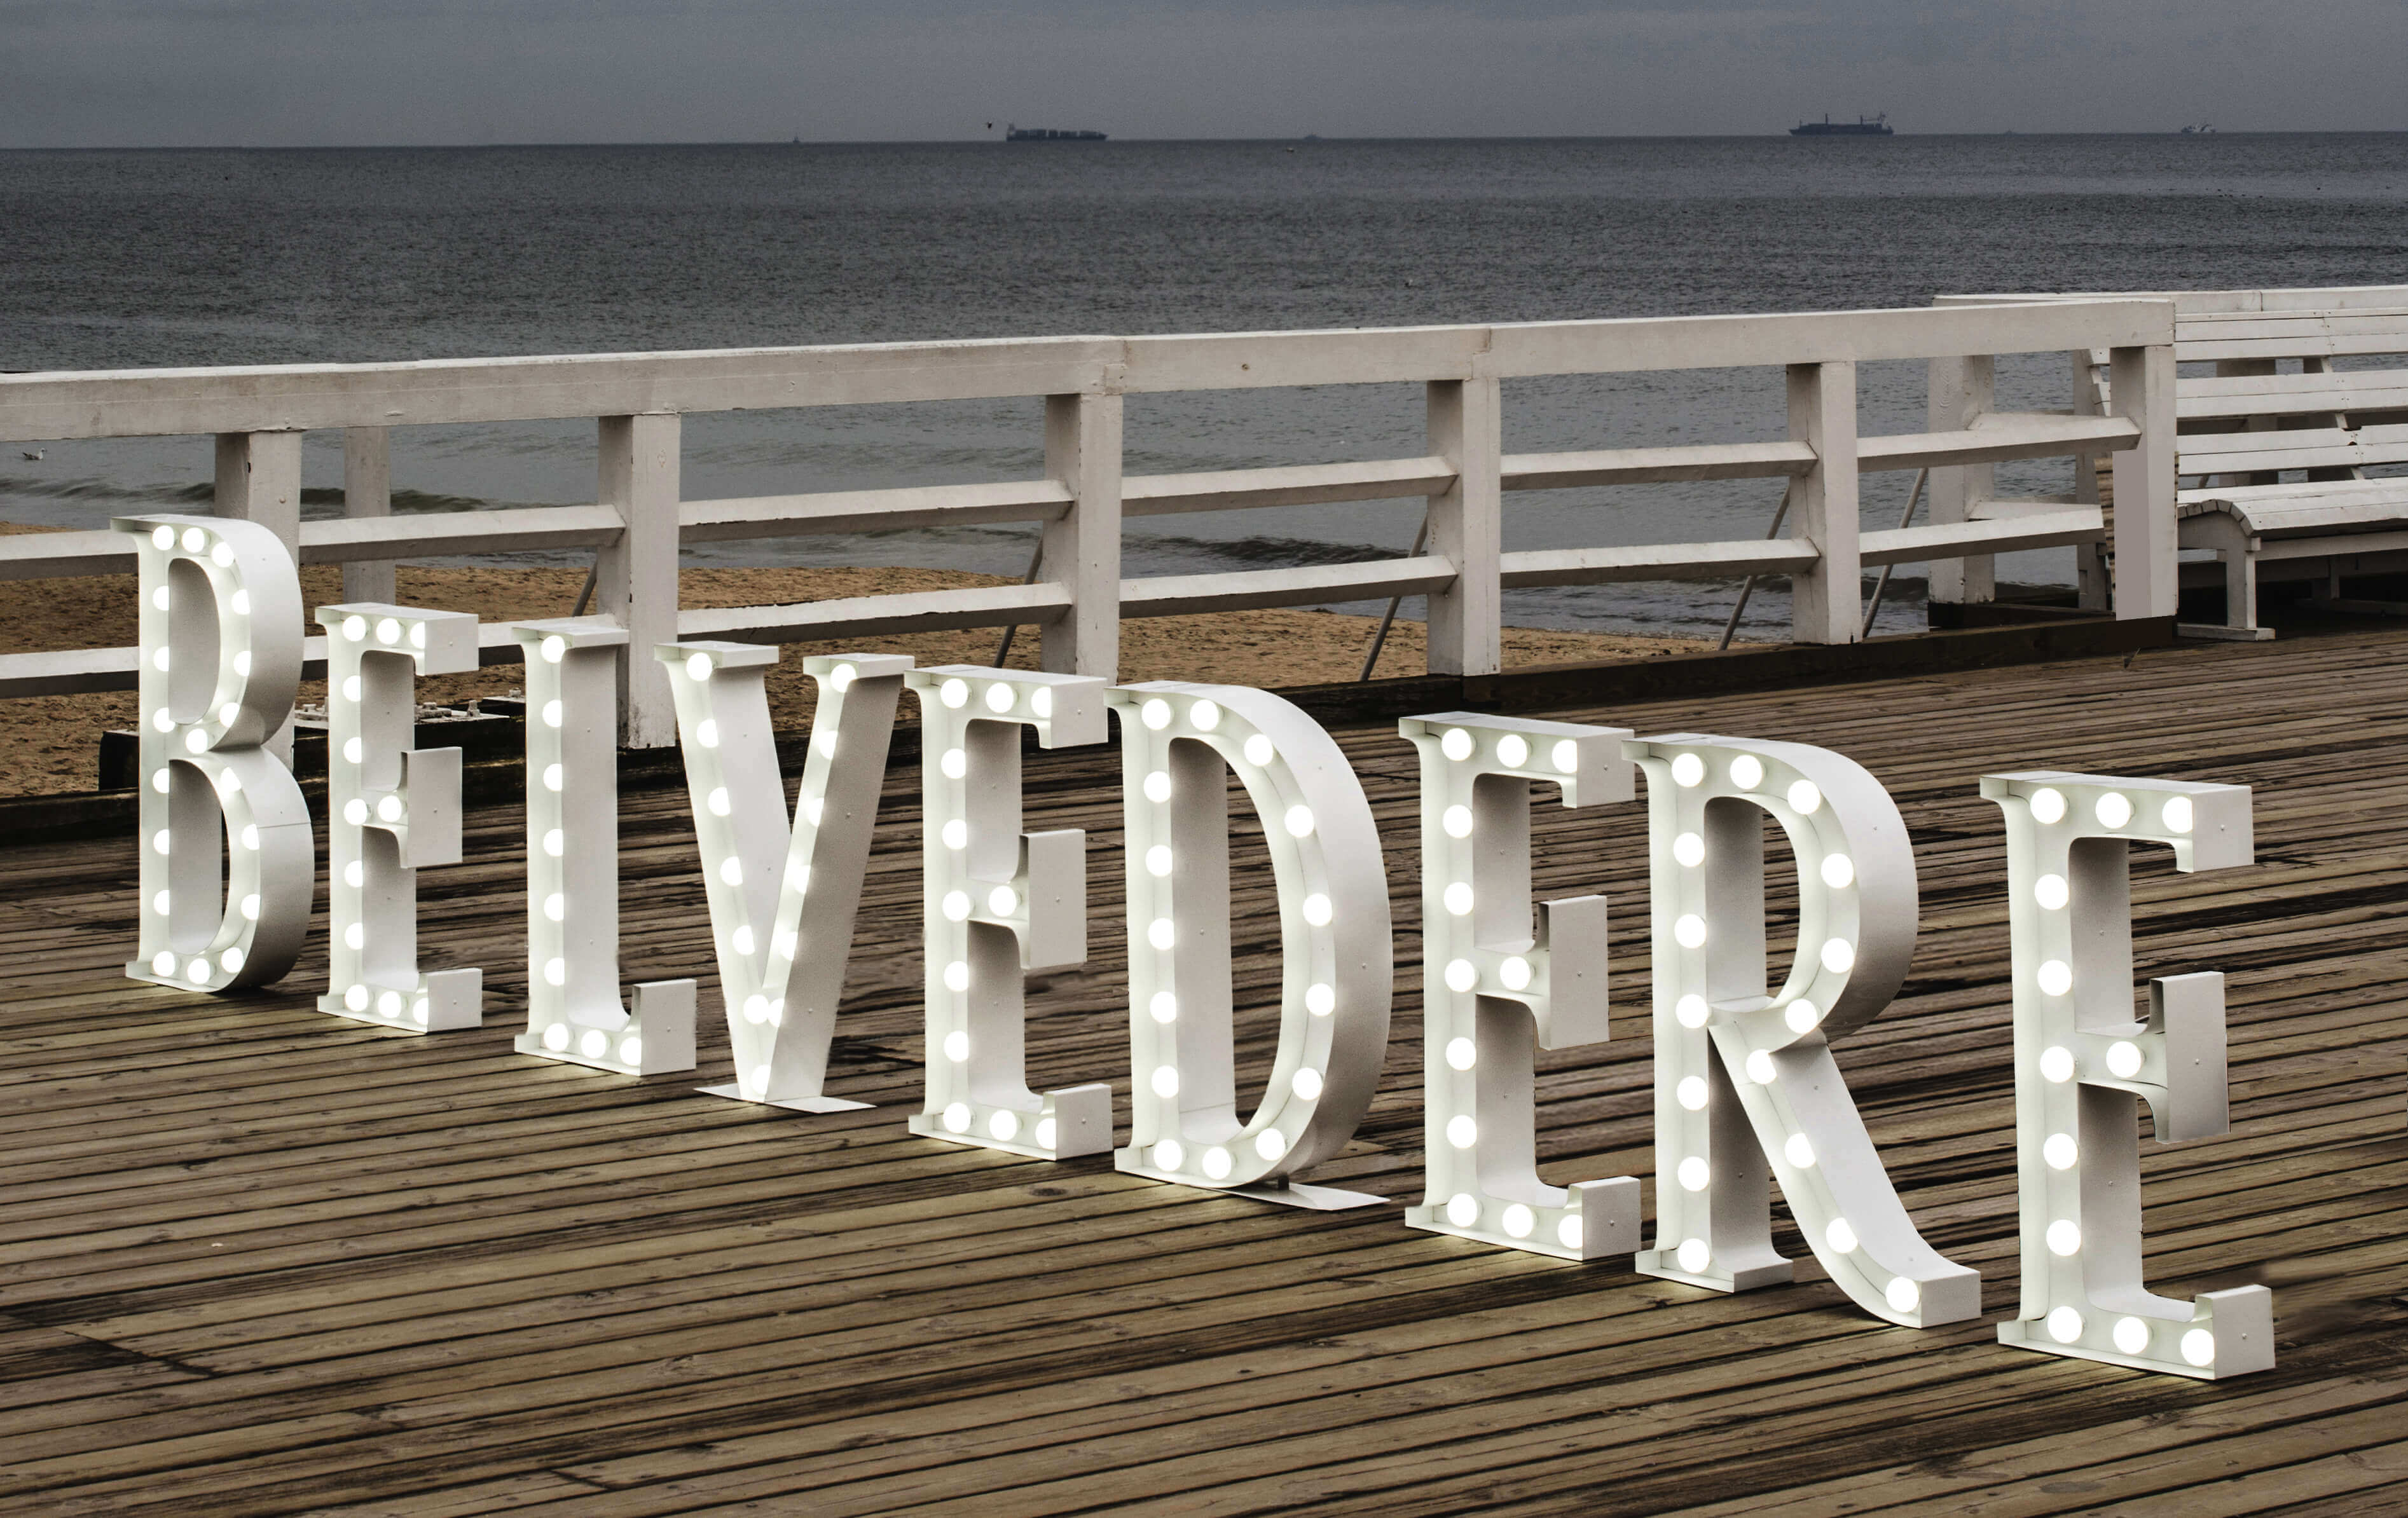 Belvedere - Belvedere - letras de pie con bombillas en el muelle